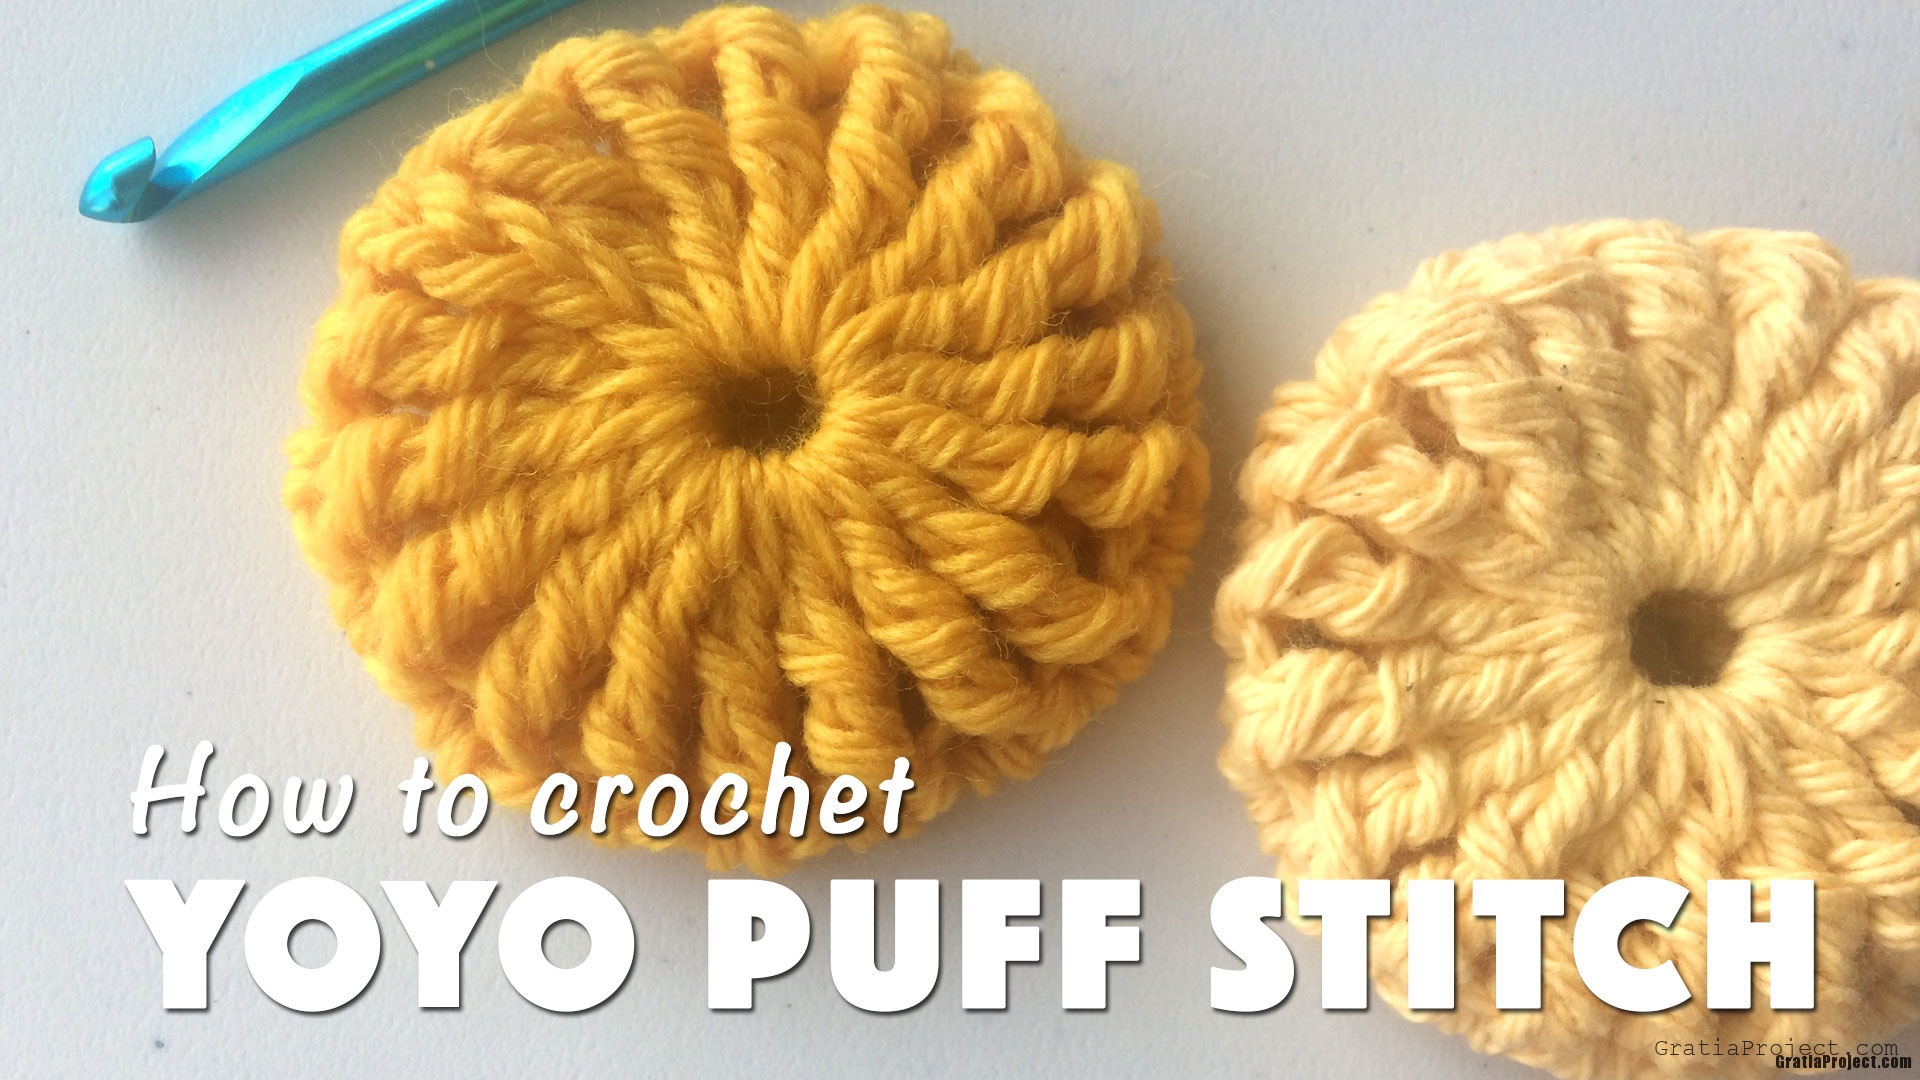 how-to-crochet-yoyo-puff-stitch